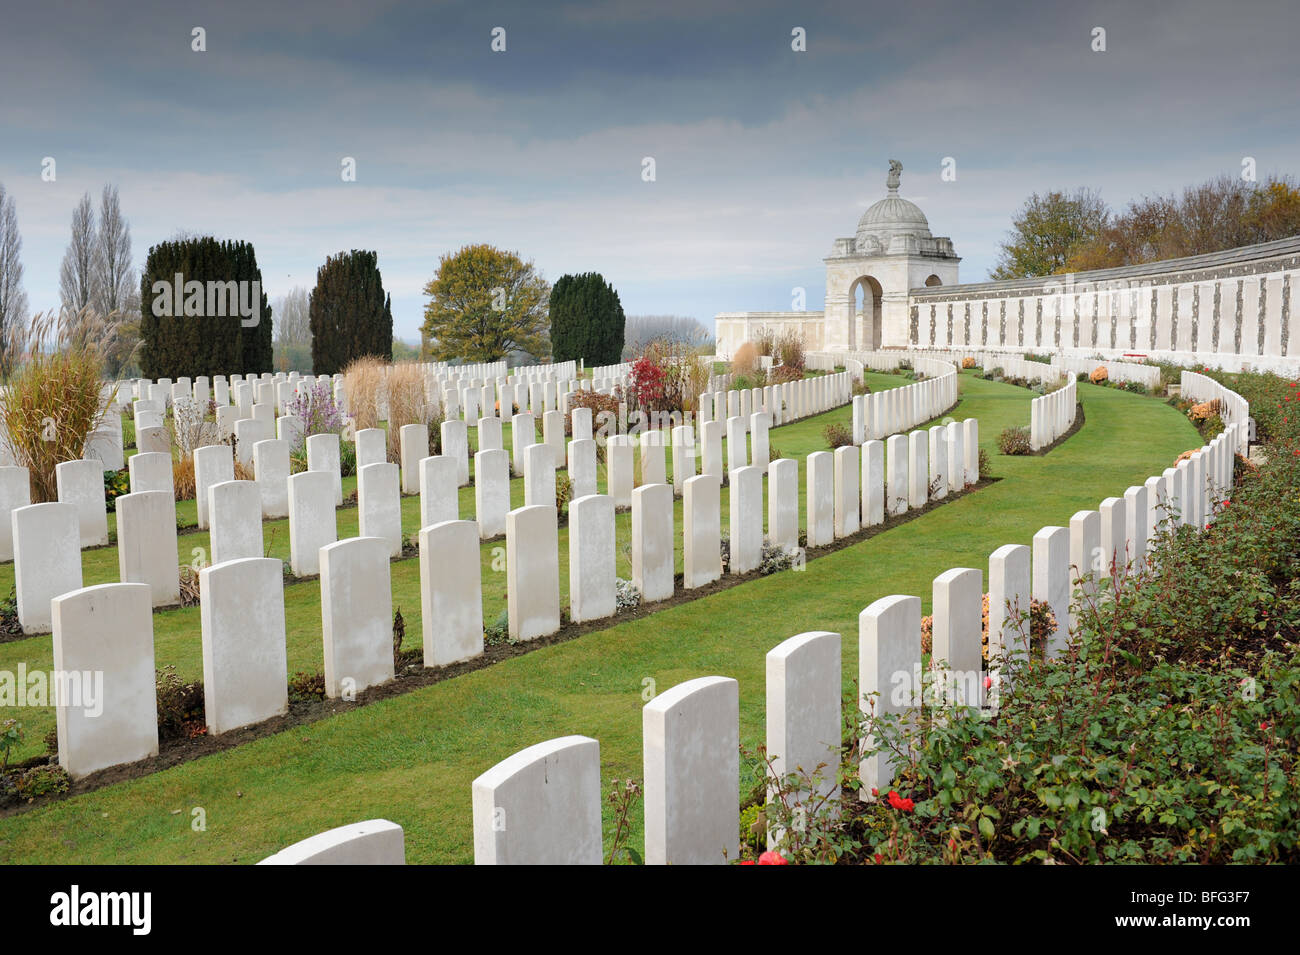 Tombes de Soldats de la Première Guerre mondiale au cimetière de Tyne Cot Passchendale Ypres Belgique Banque D'Images